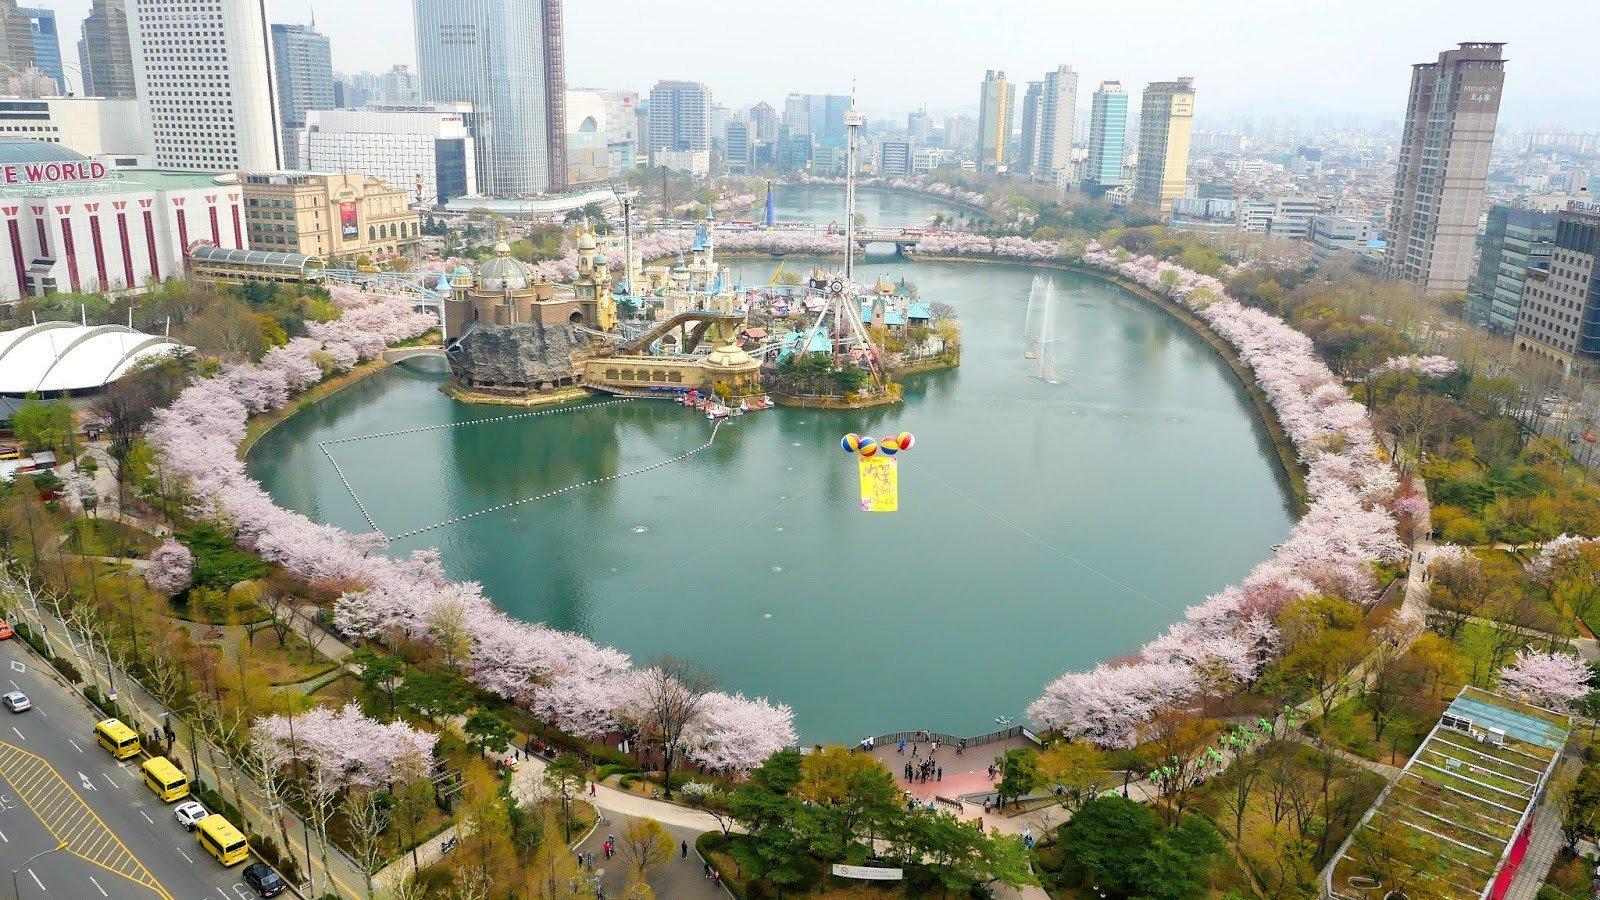 Hoa anh đào nở rực rỡ quanh hồ Seokchon (Ảnh: Internet).